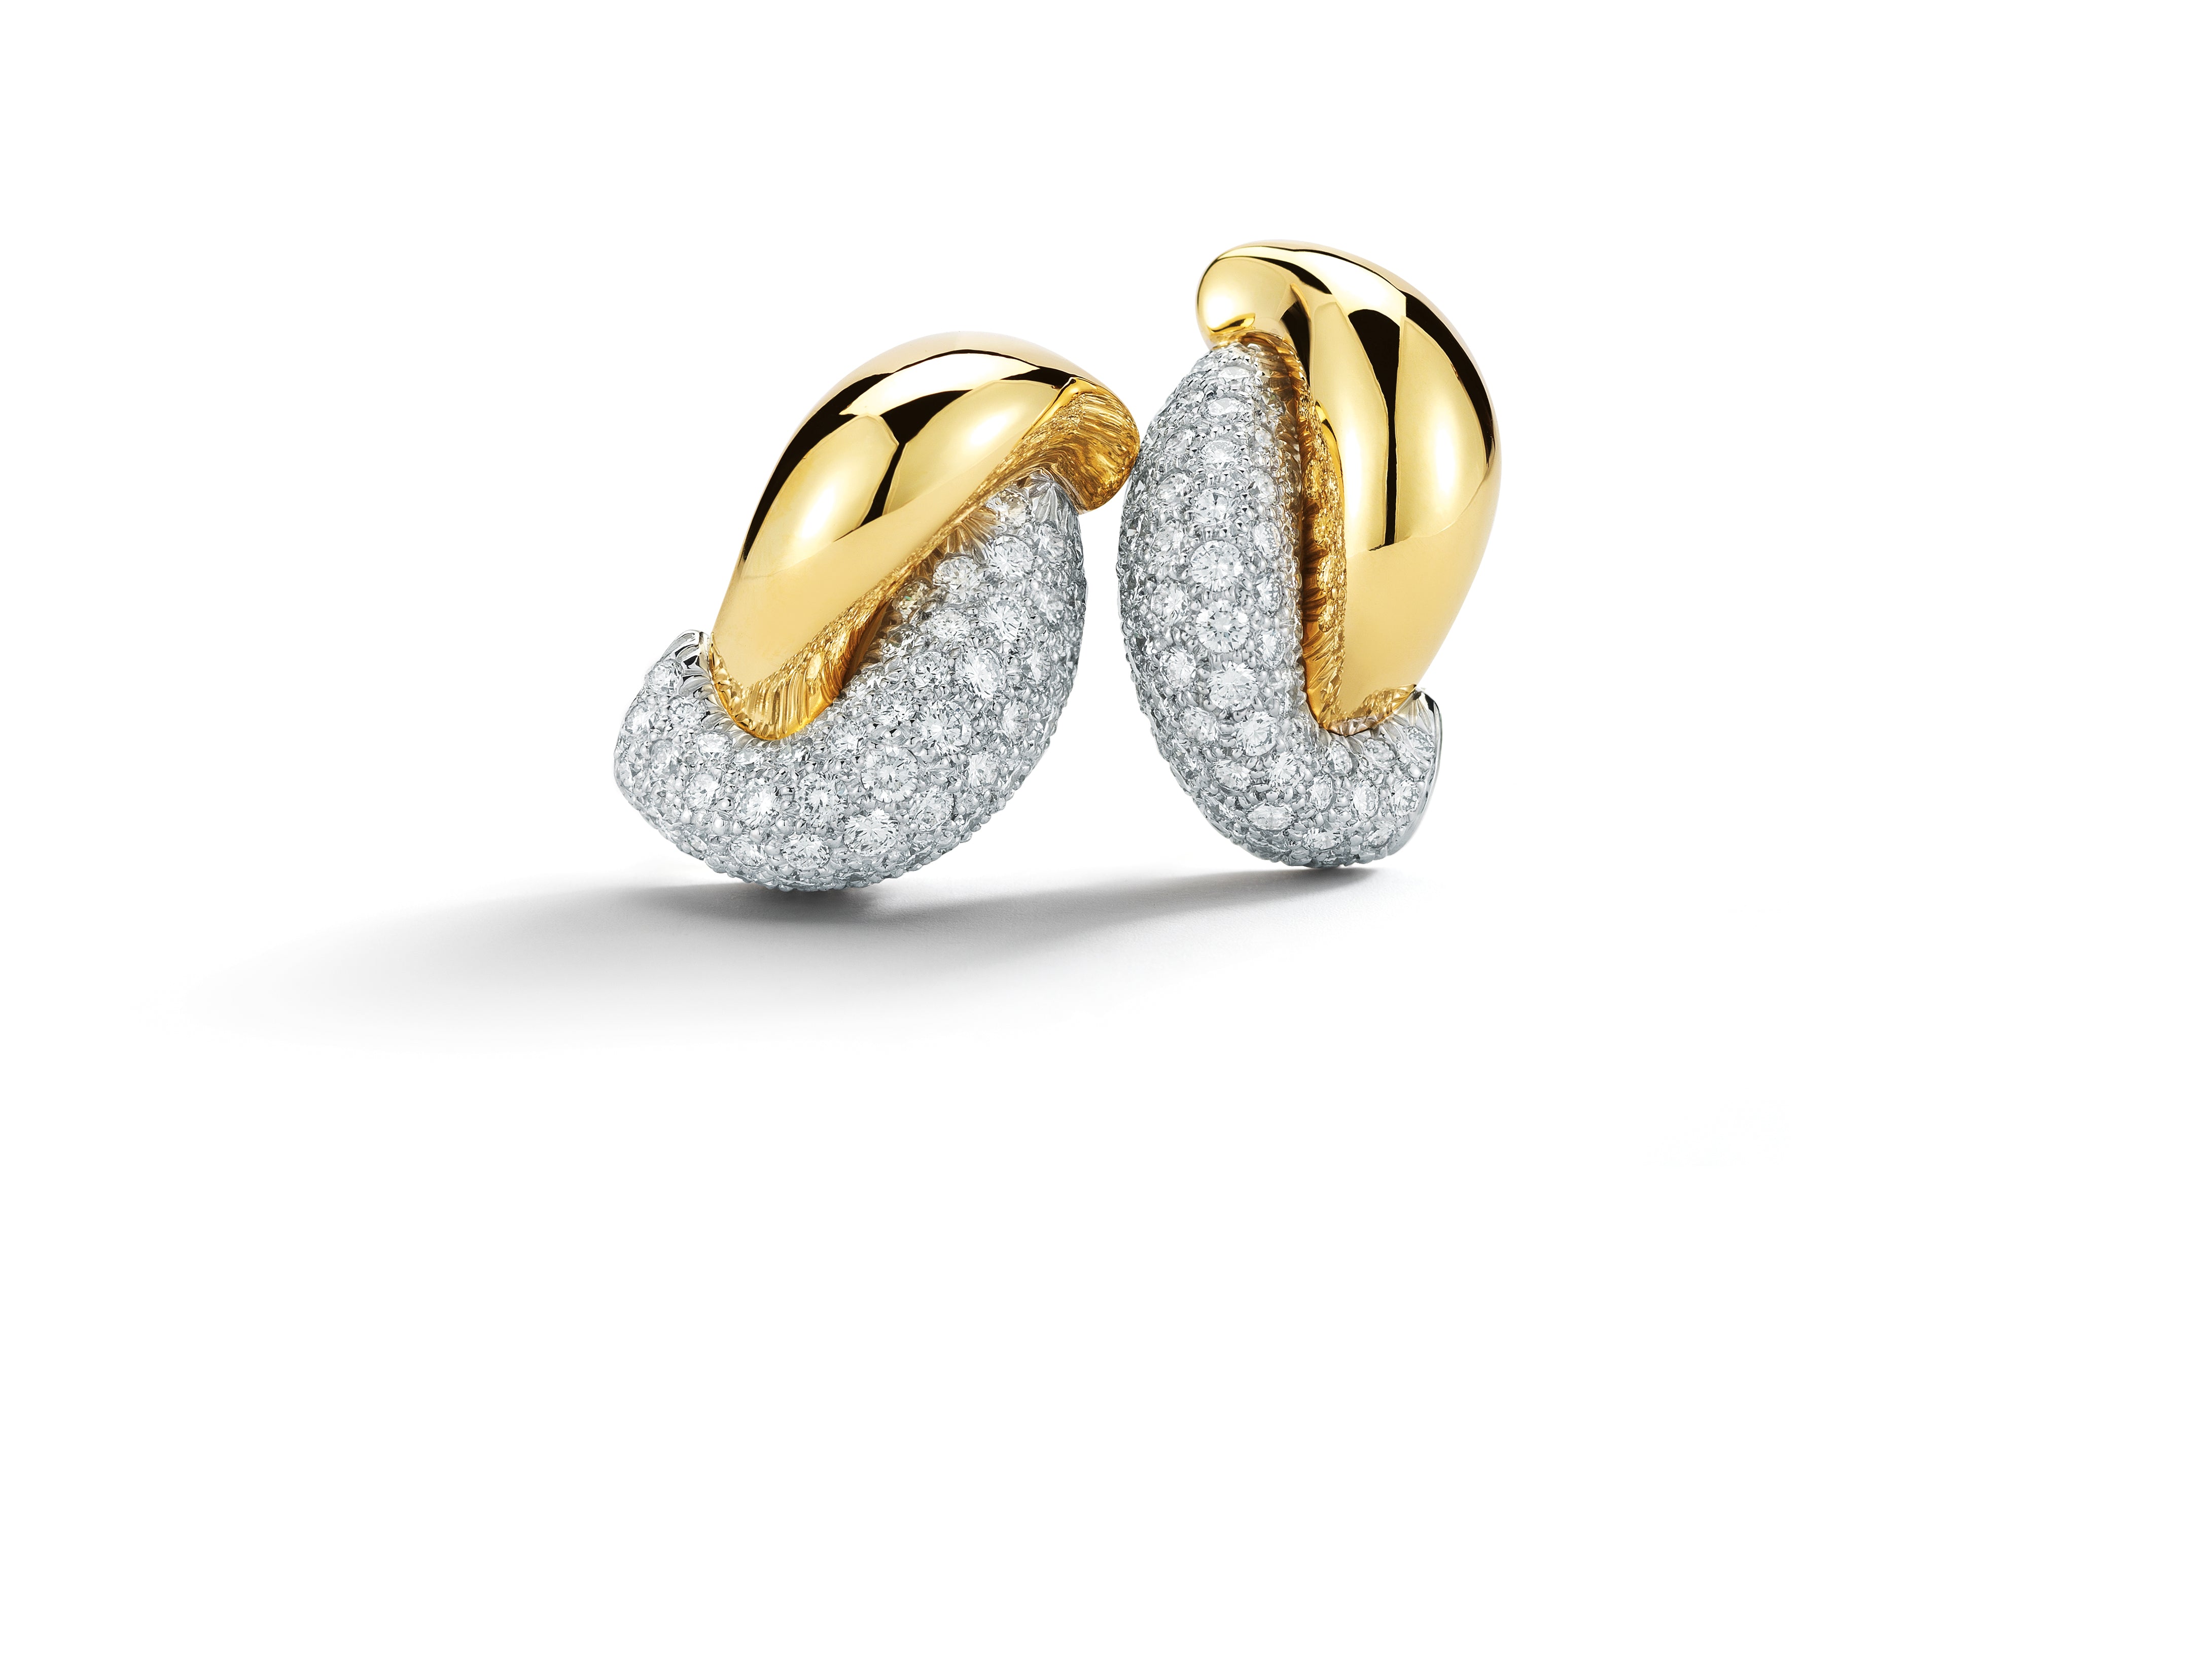 Half Link Earrings in Pave Diamond